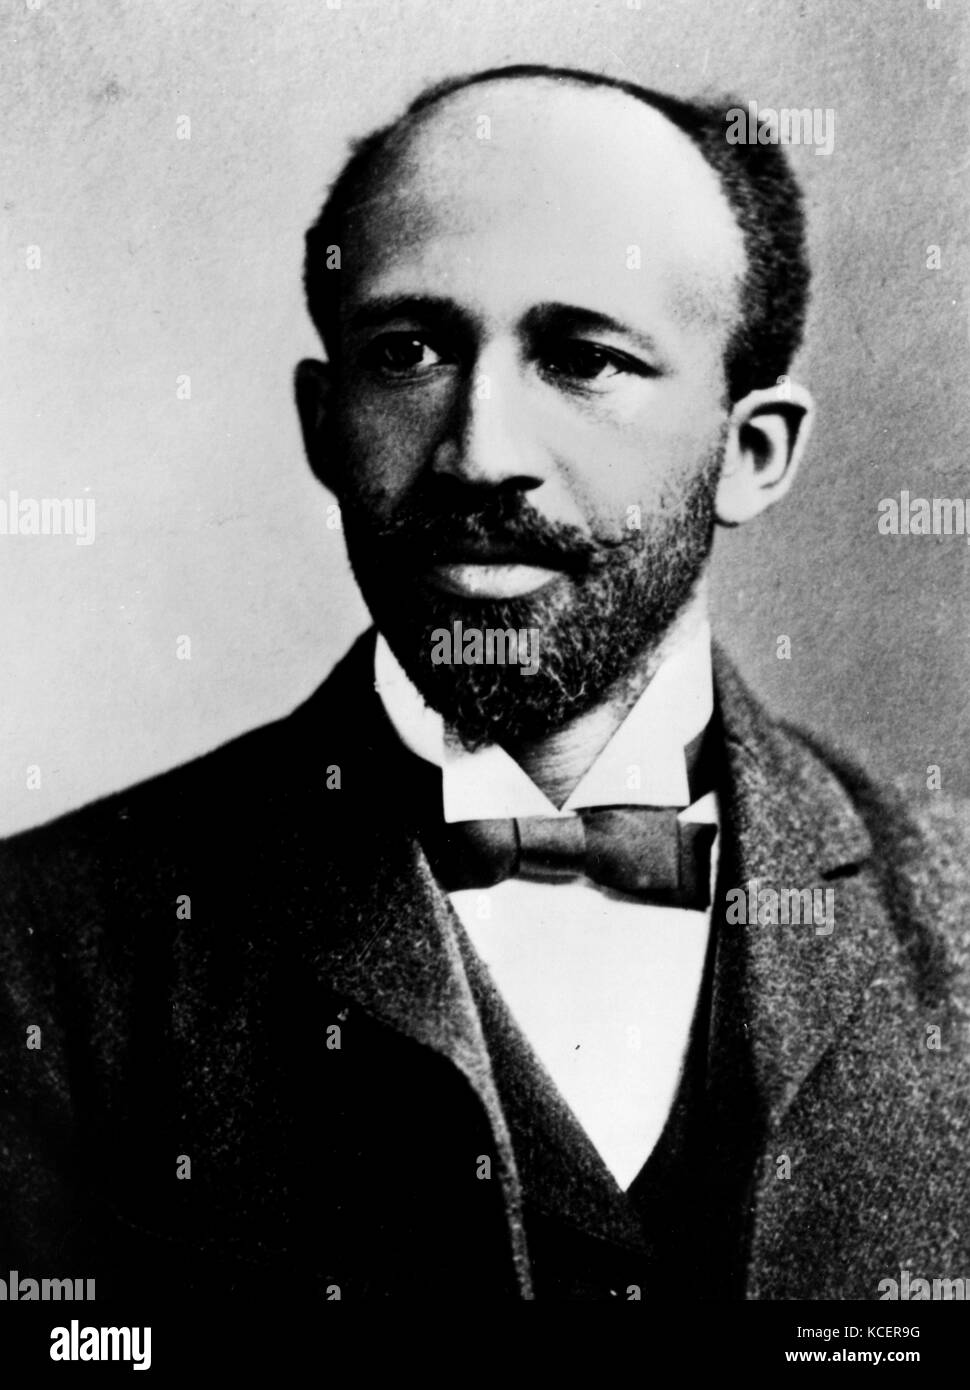 William Edward Burghardt 'W. E. B. Du Bois' (1868 - 1963) Le sociologue américain, historien, activiste des droits civils, de l'auteur, panafricaniste Banque D'Images